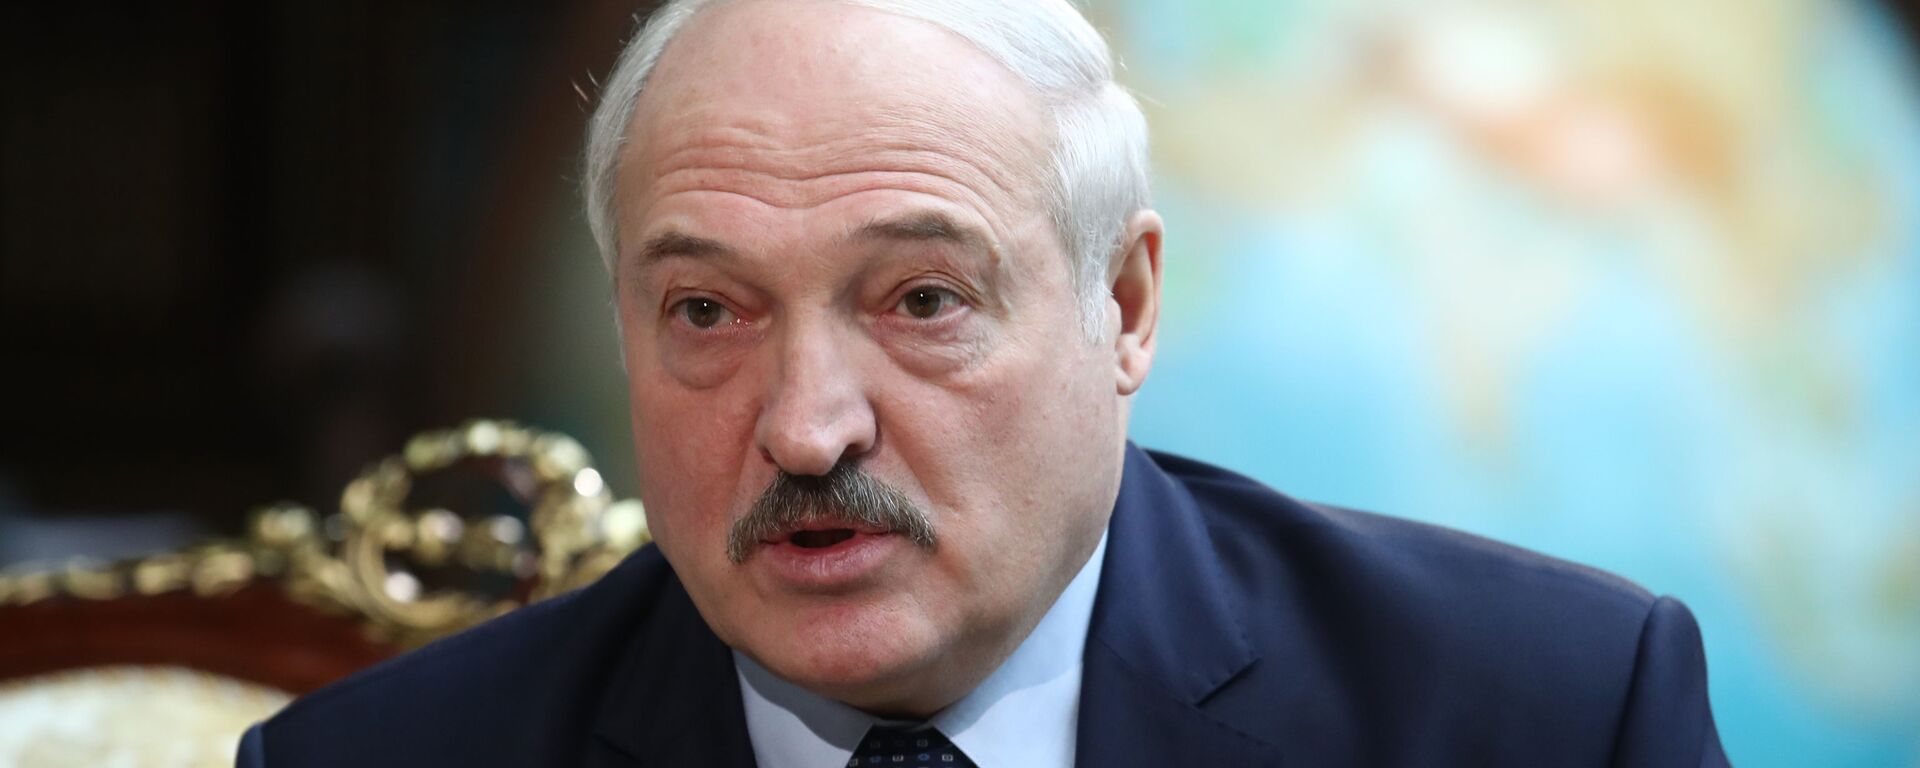 Alexandr Lukashenko, presidente de Bielorrusia  - Sputnik Mundo, 1920, 11.01.2021